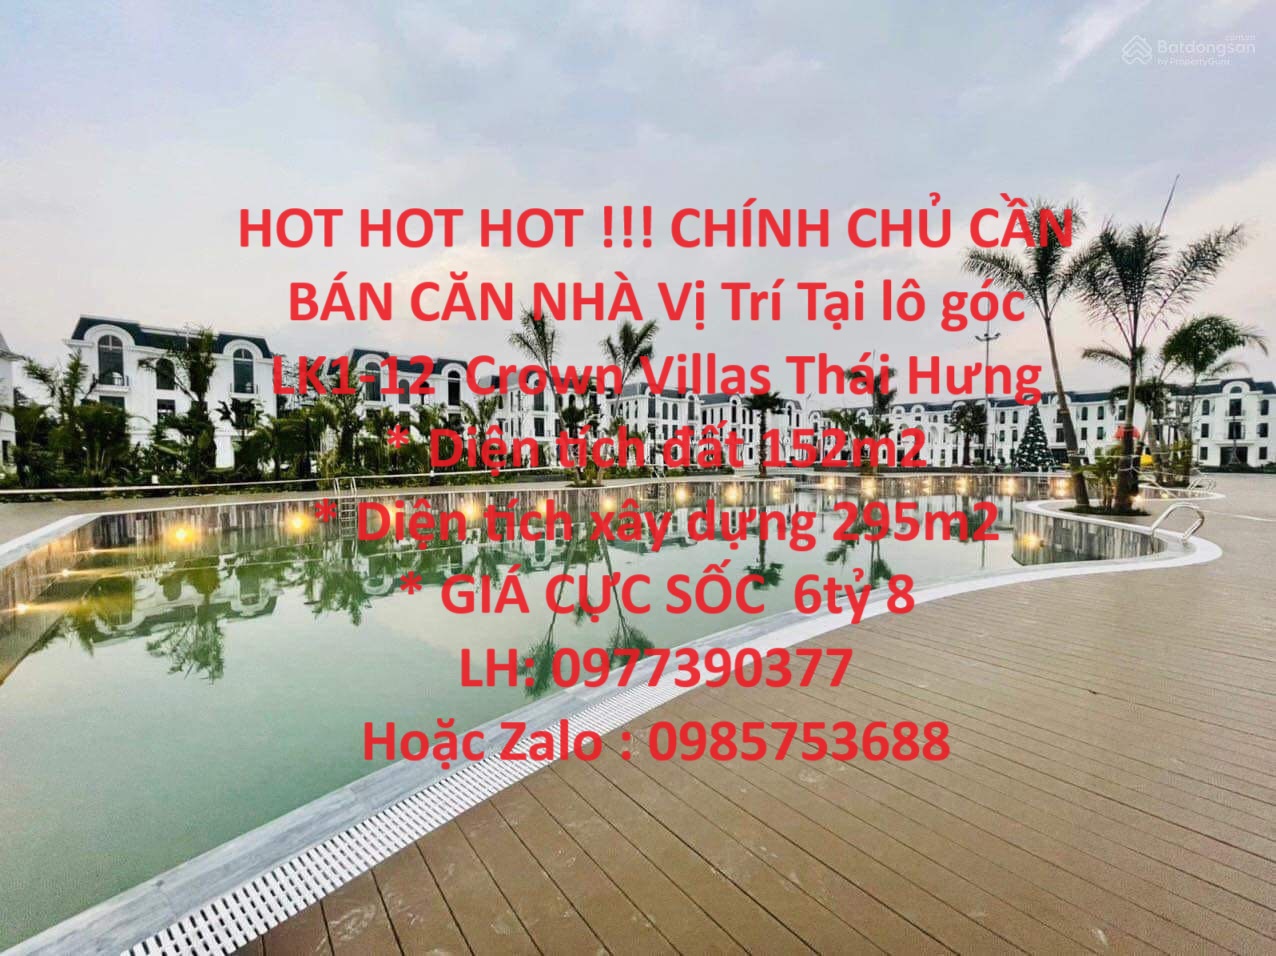 HOT HOT HOT !!! CHÍNH CHỦ CẦN BÁN CĂN NHÀ Vị Trí Tại lô góc LK1-12  Crown Villas Thái Hưng - Ảnh chính